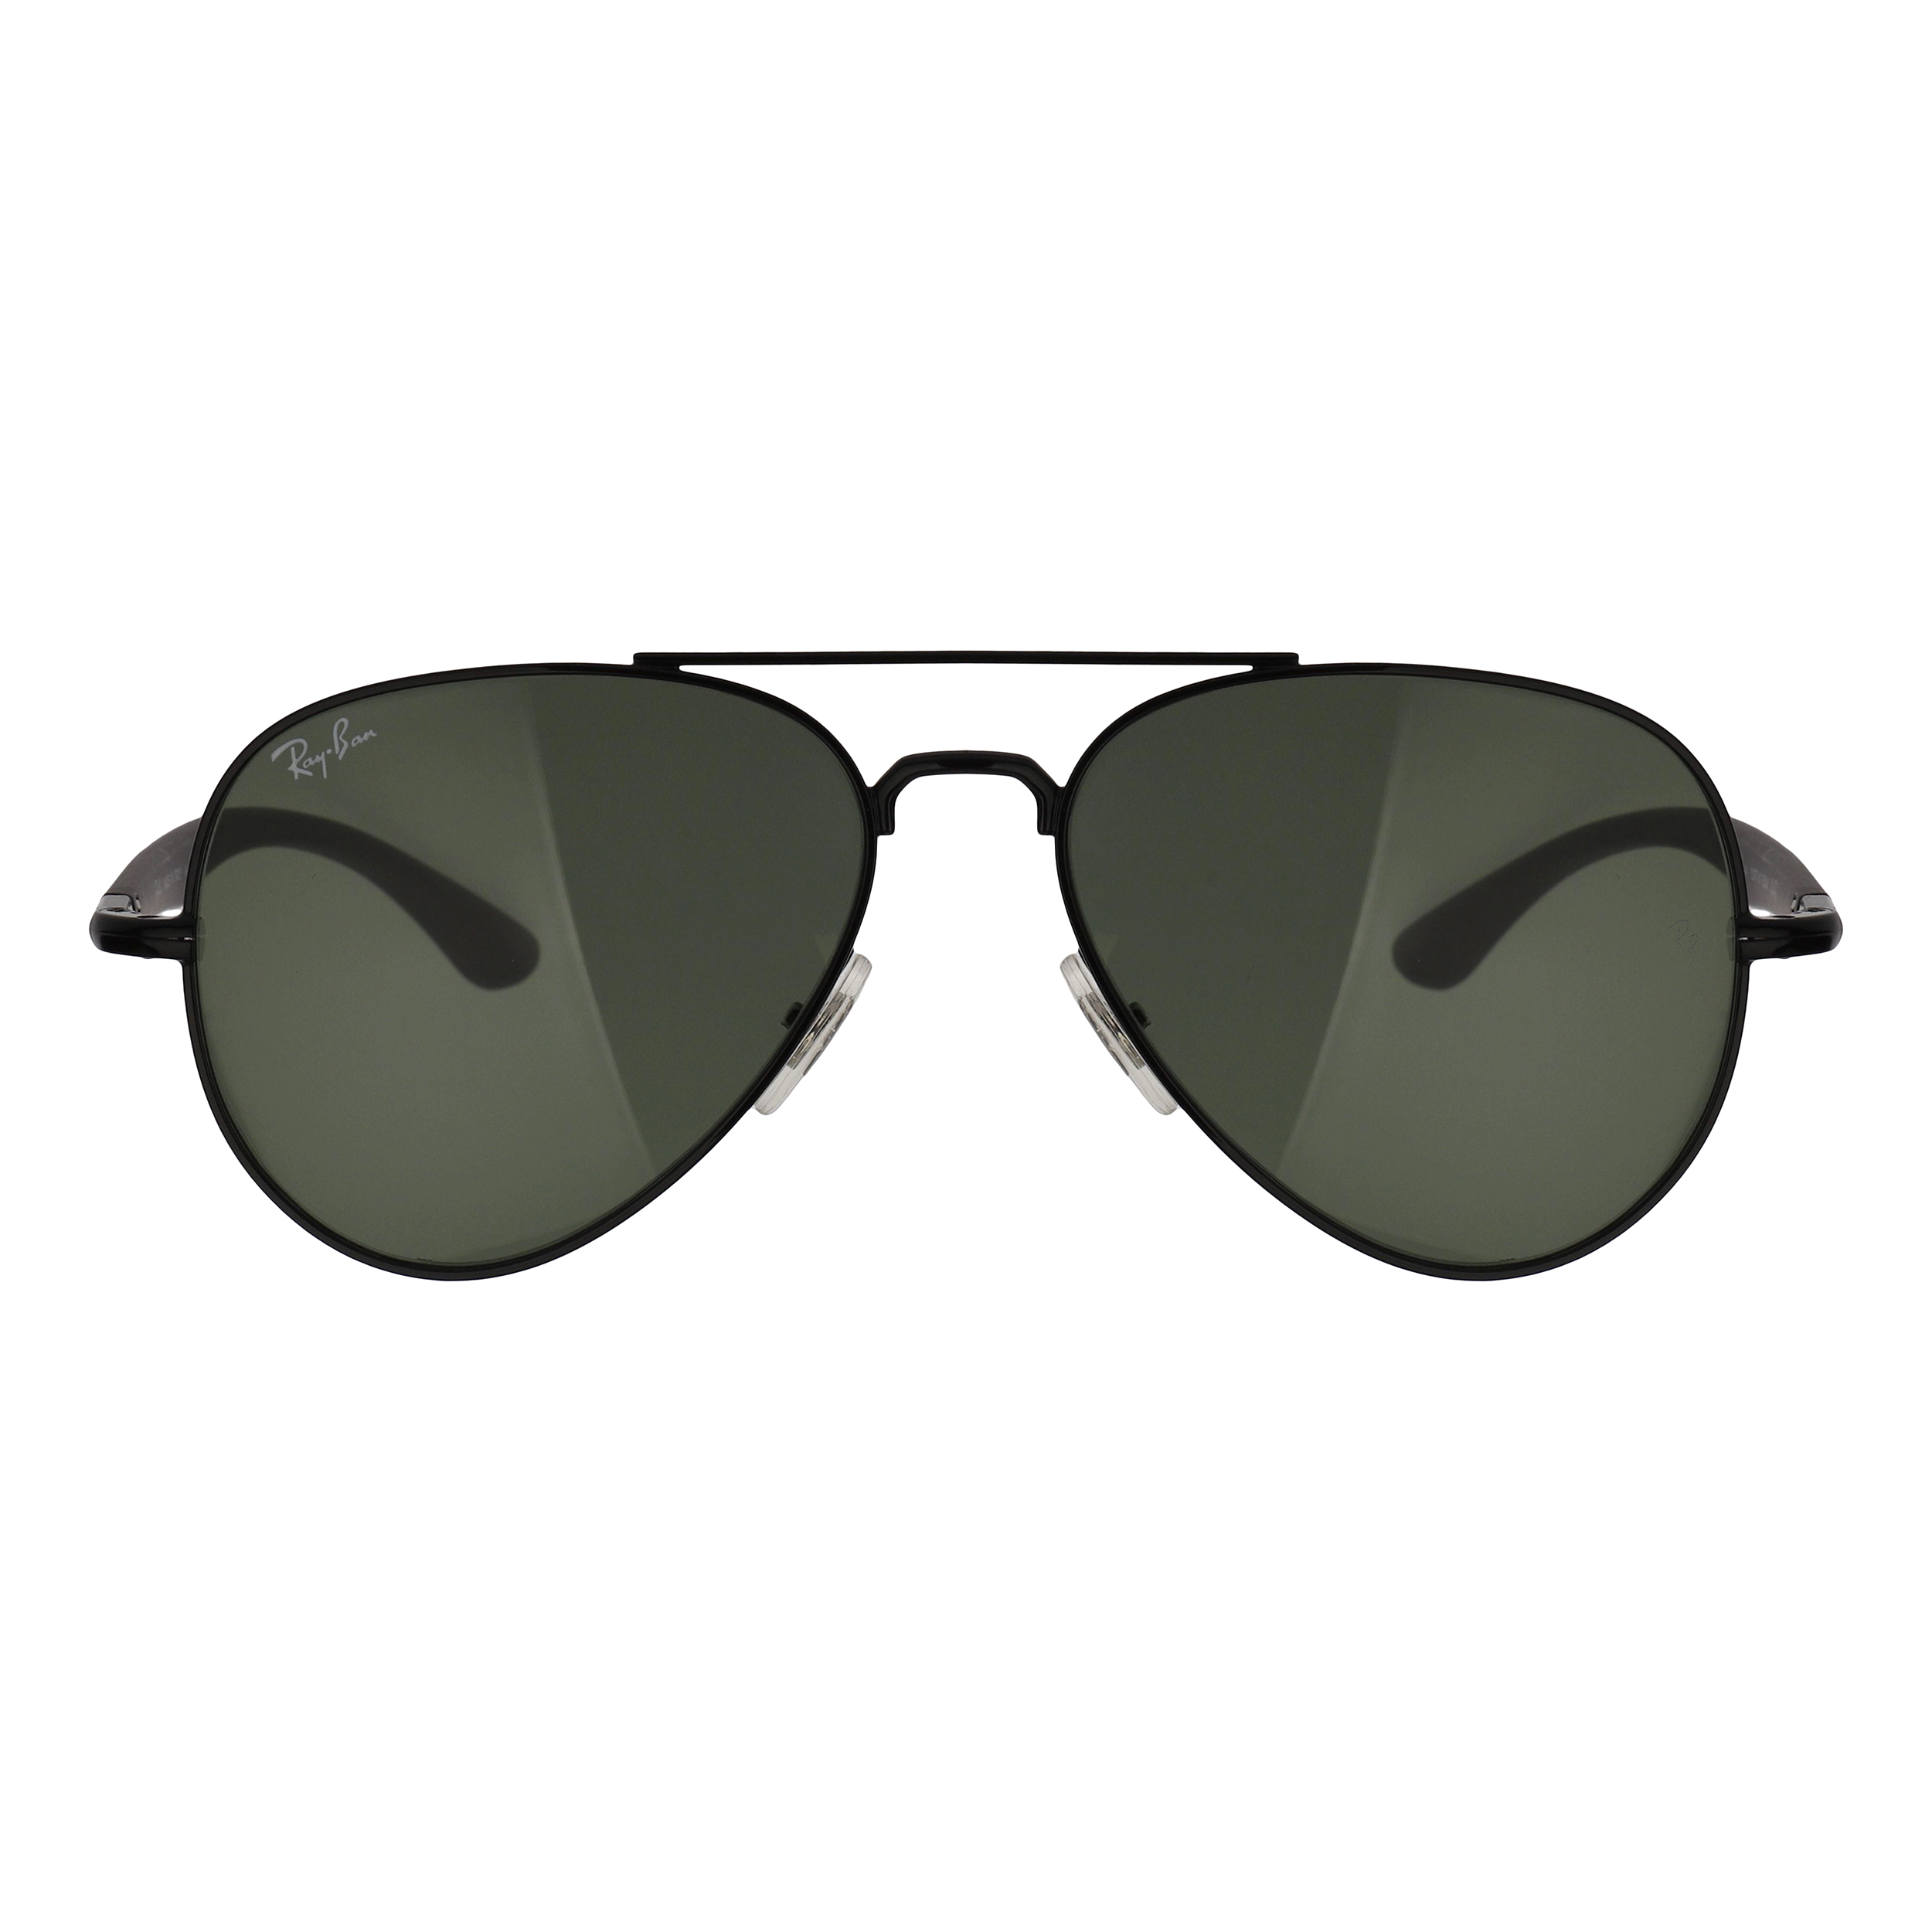 عینک آفتابی ری بن مدل 3675-002/31